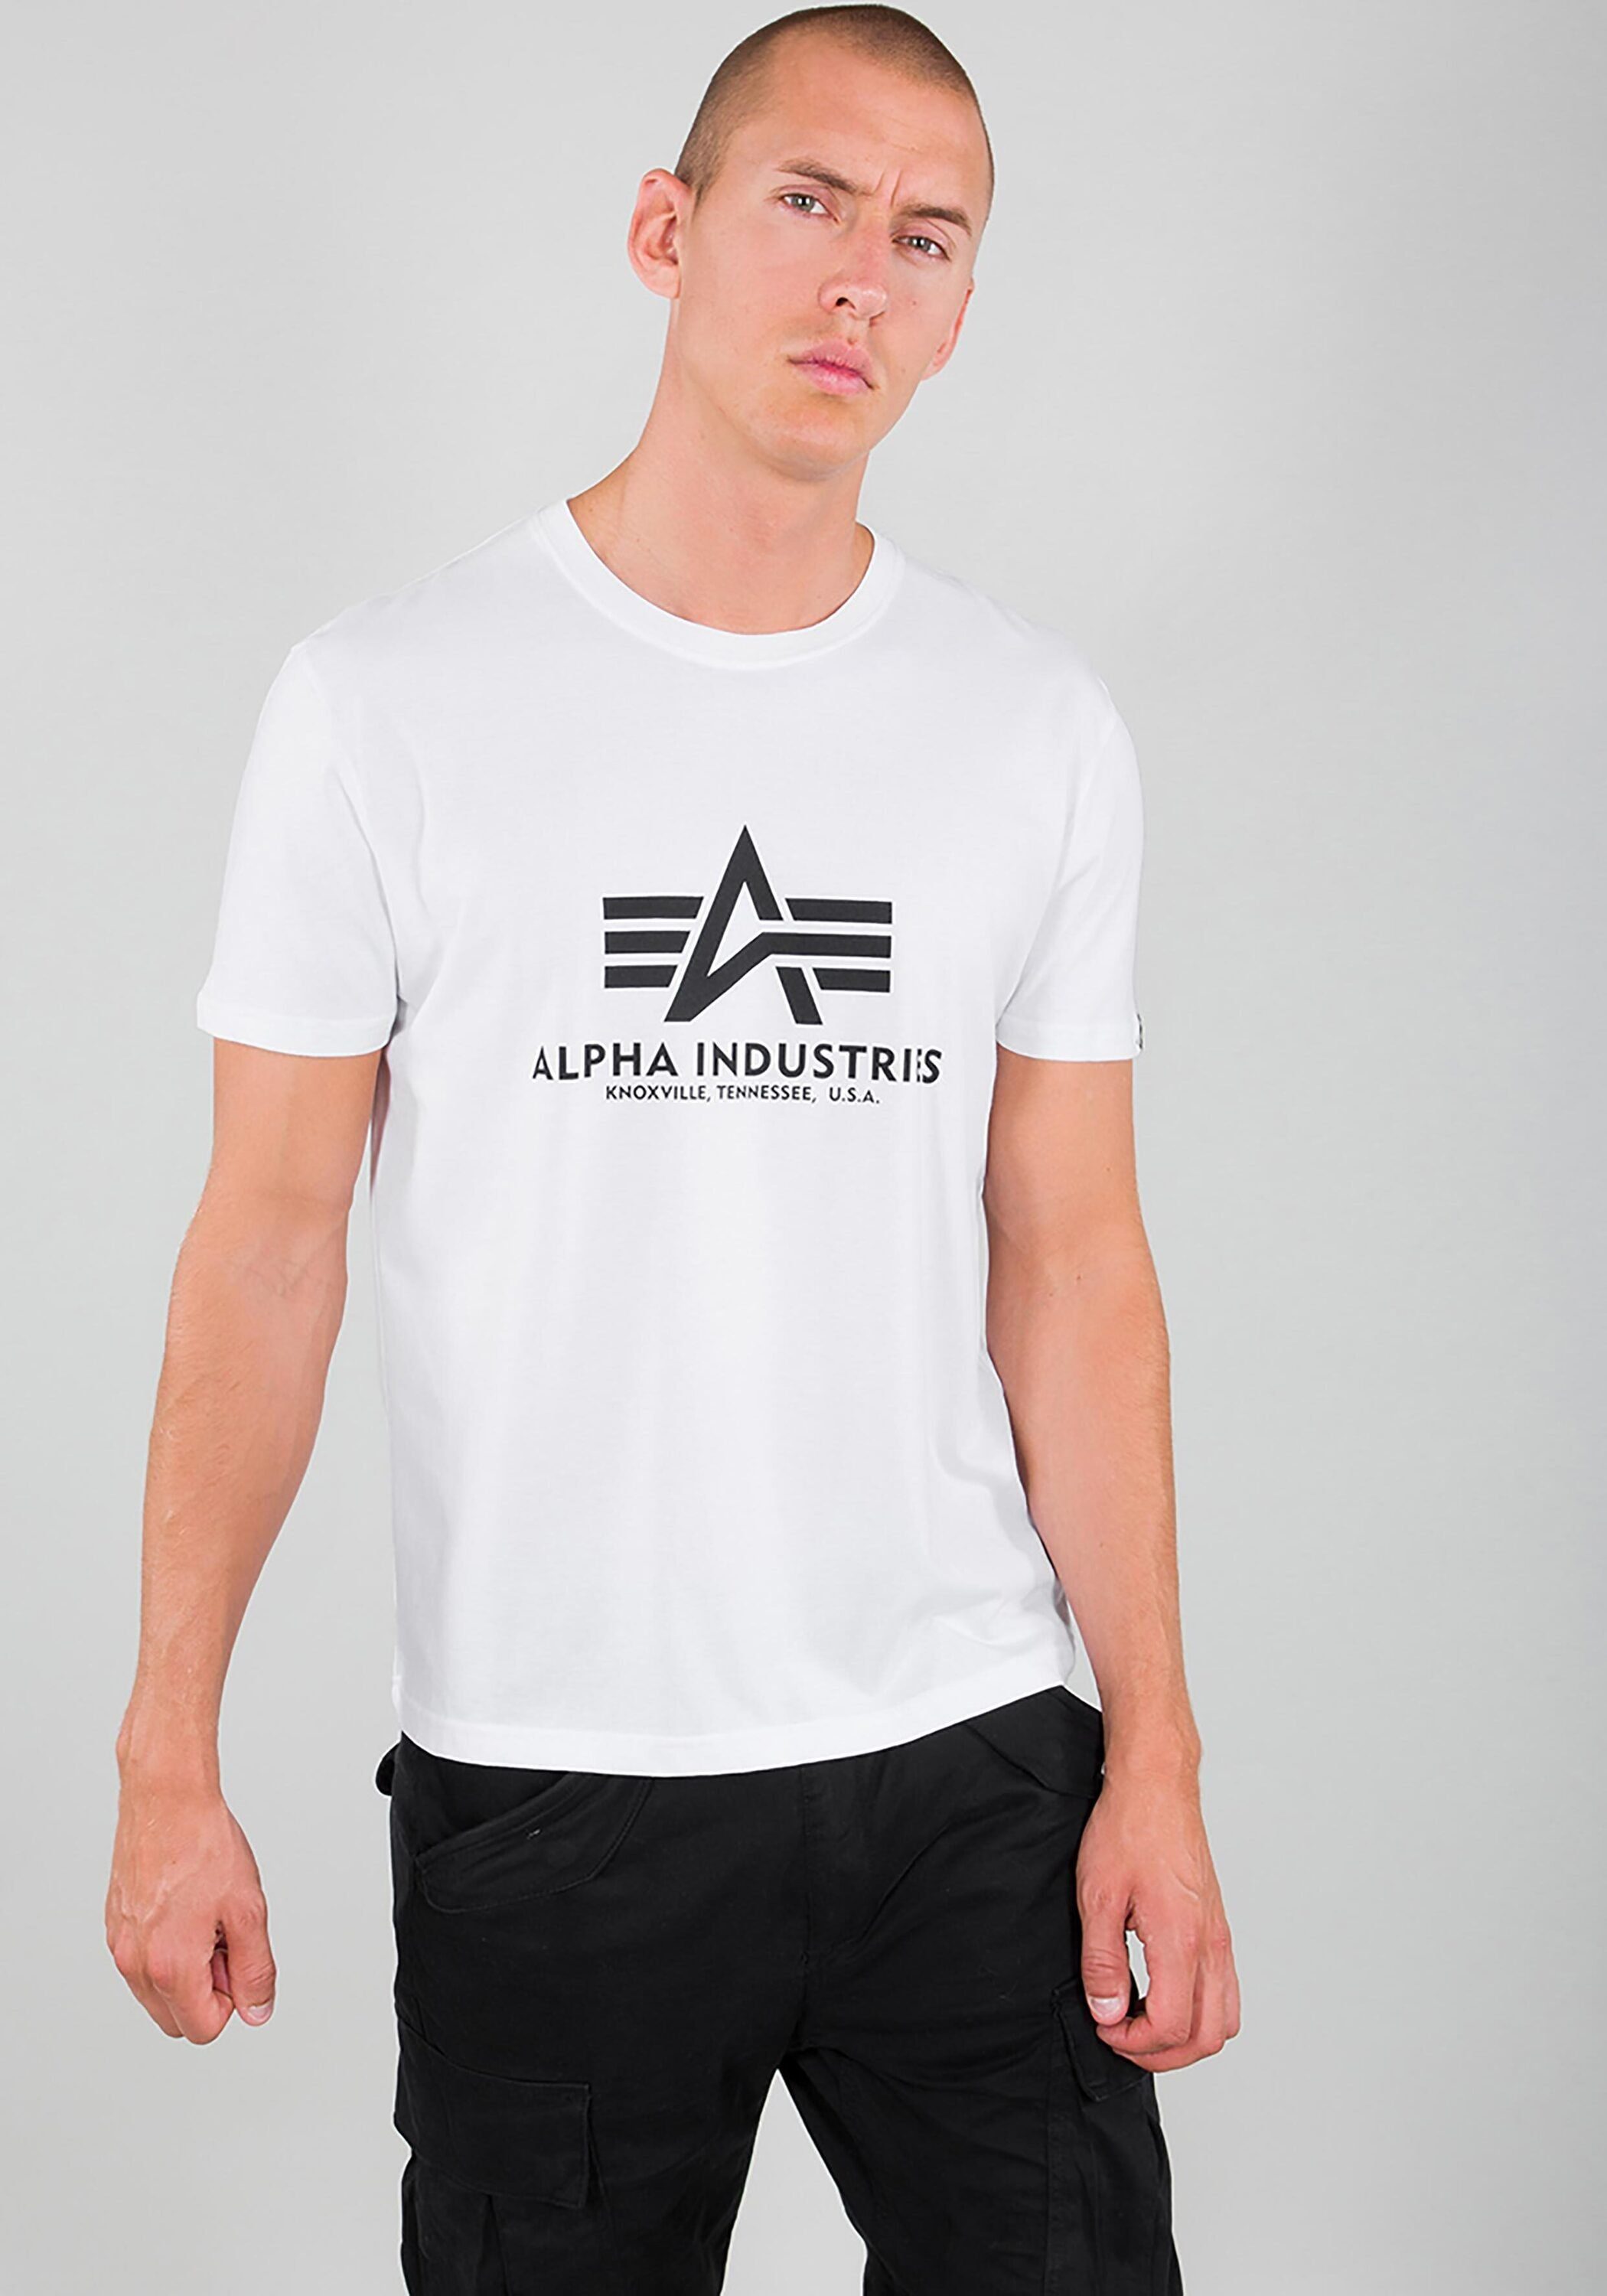 Top-Sportler Industries - T-Shirt T-Shirts Industries T-Shirt white Basic Men Alpha Alpha